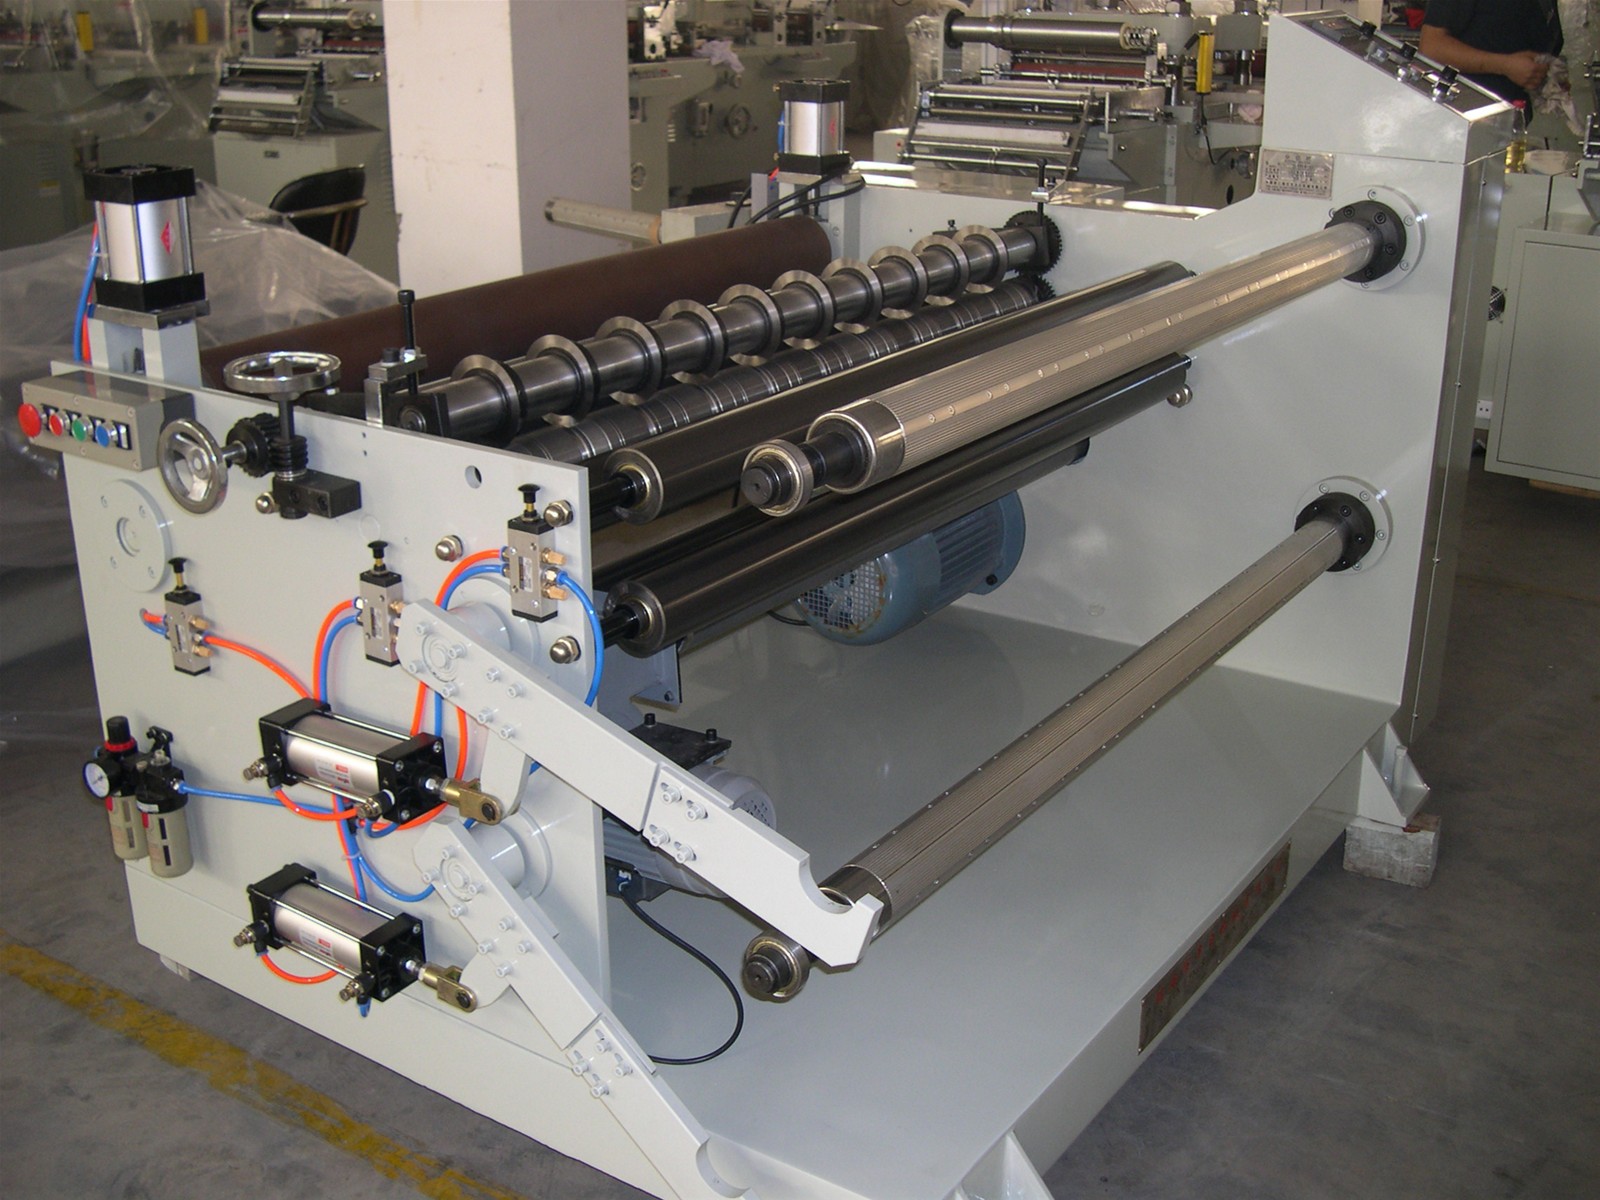 kraft paper cutting machine